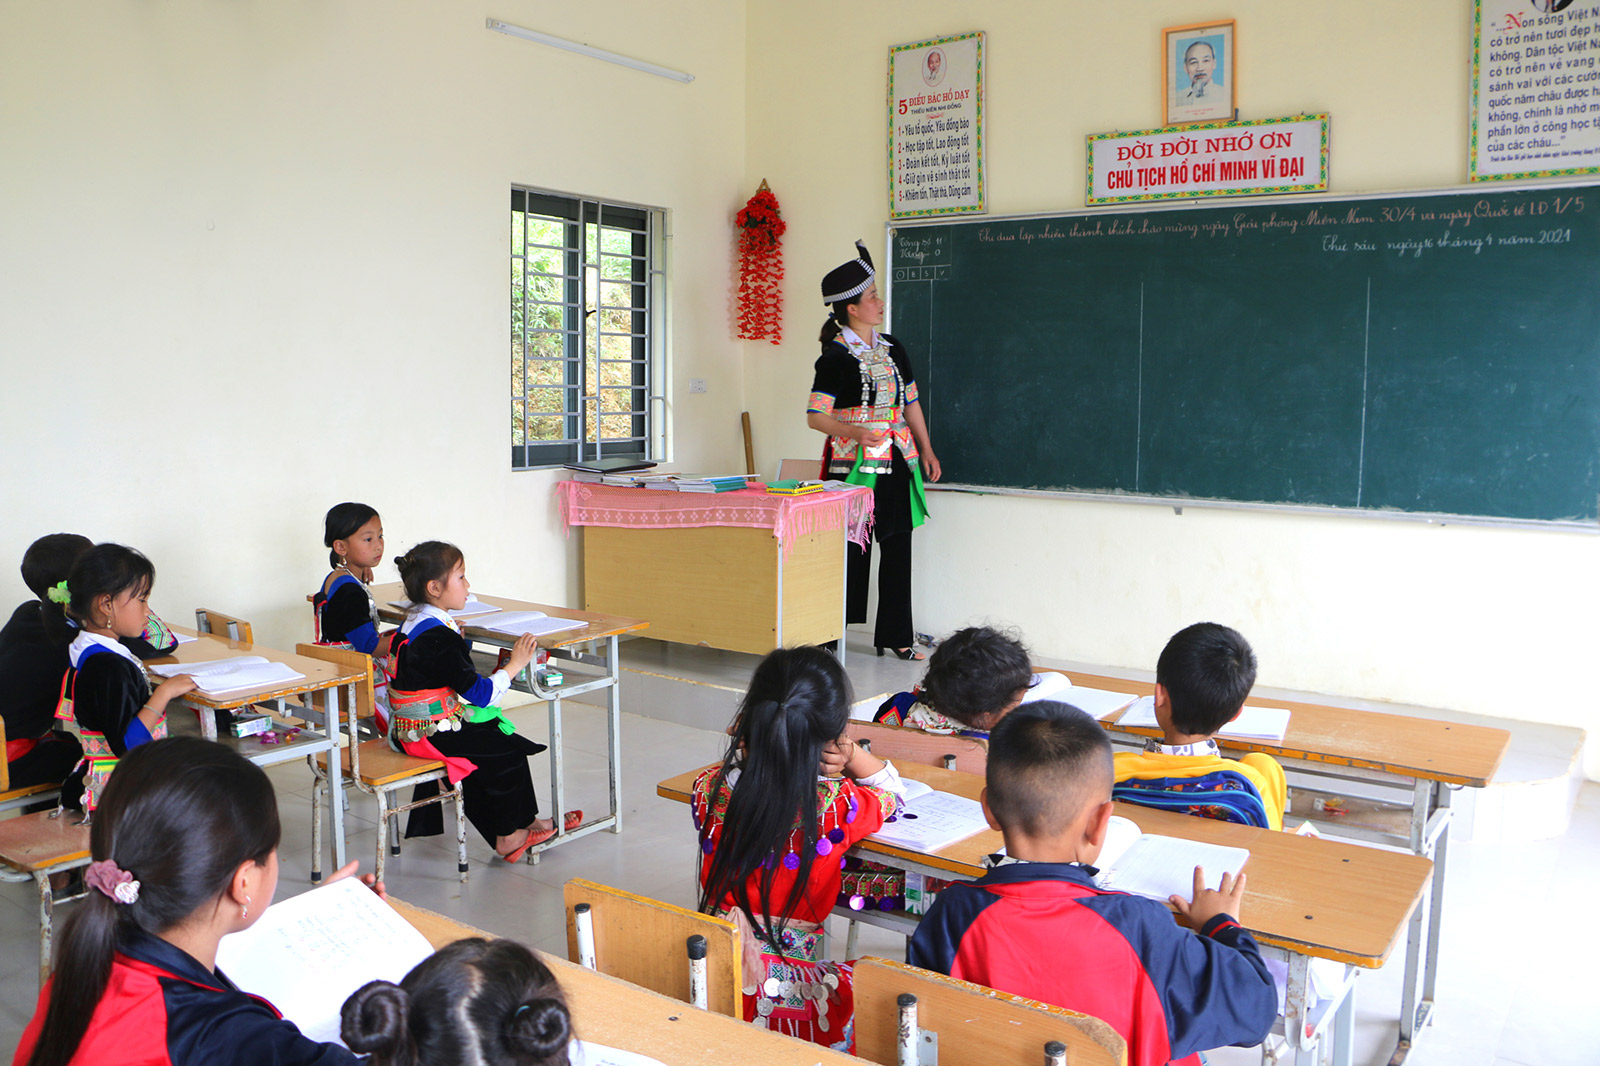 Lớp học tại Tiểu học Mường Lống 2 được kiên cố hóa do doanh nghiệp tài trợ. Ảnh: Nguyễn Hải